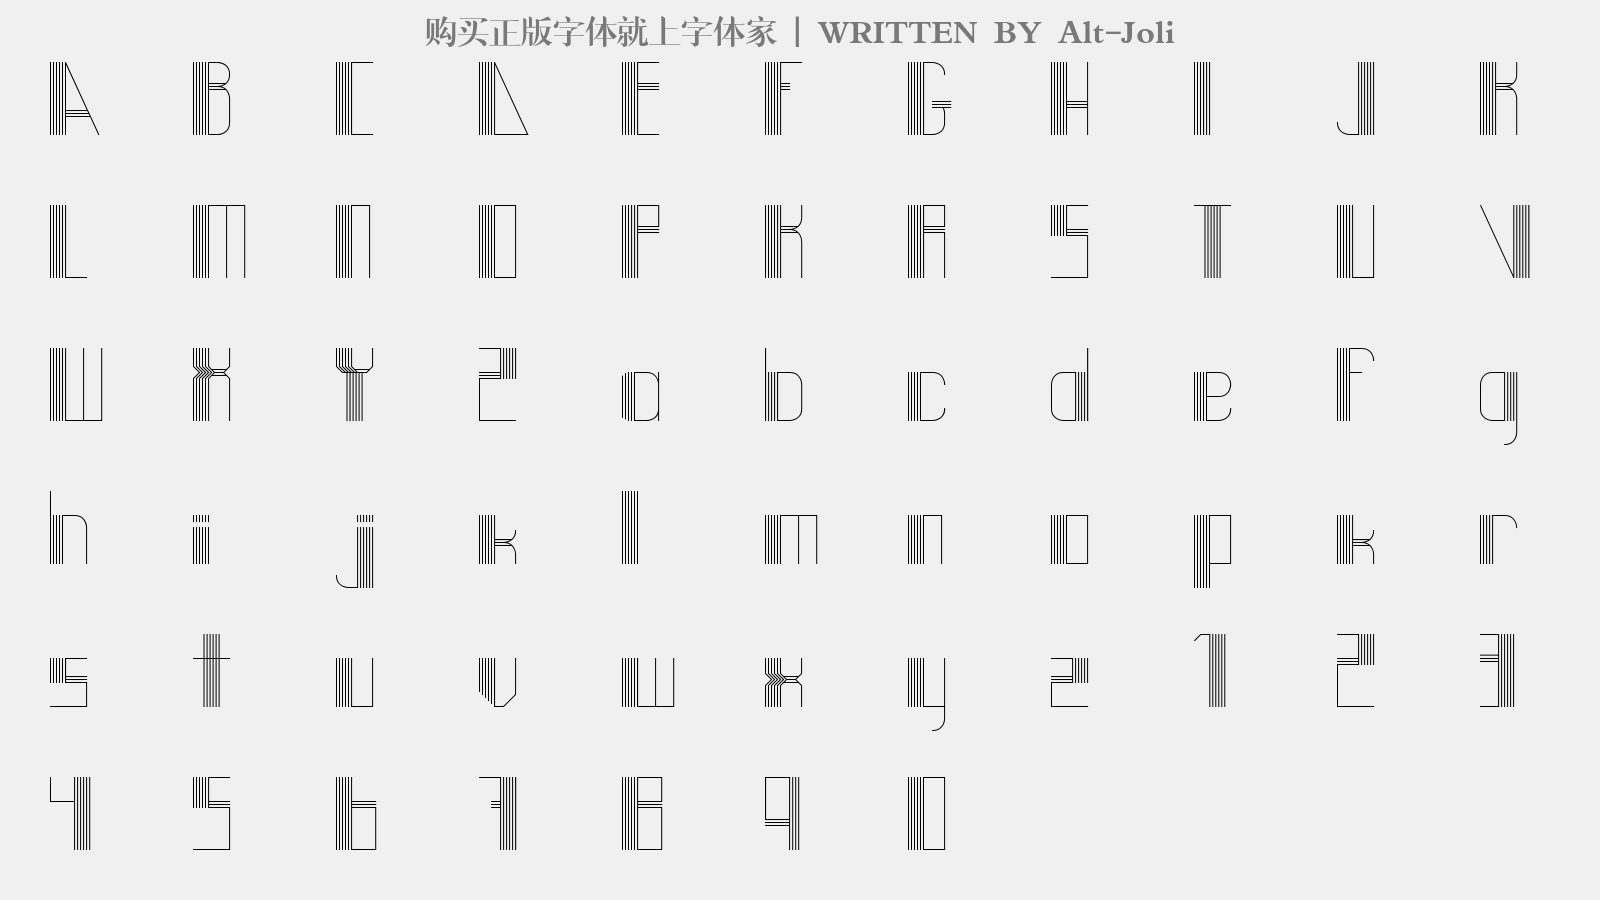 Alt-Joli - 大写字母/小写字母/数字